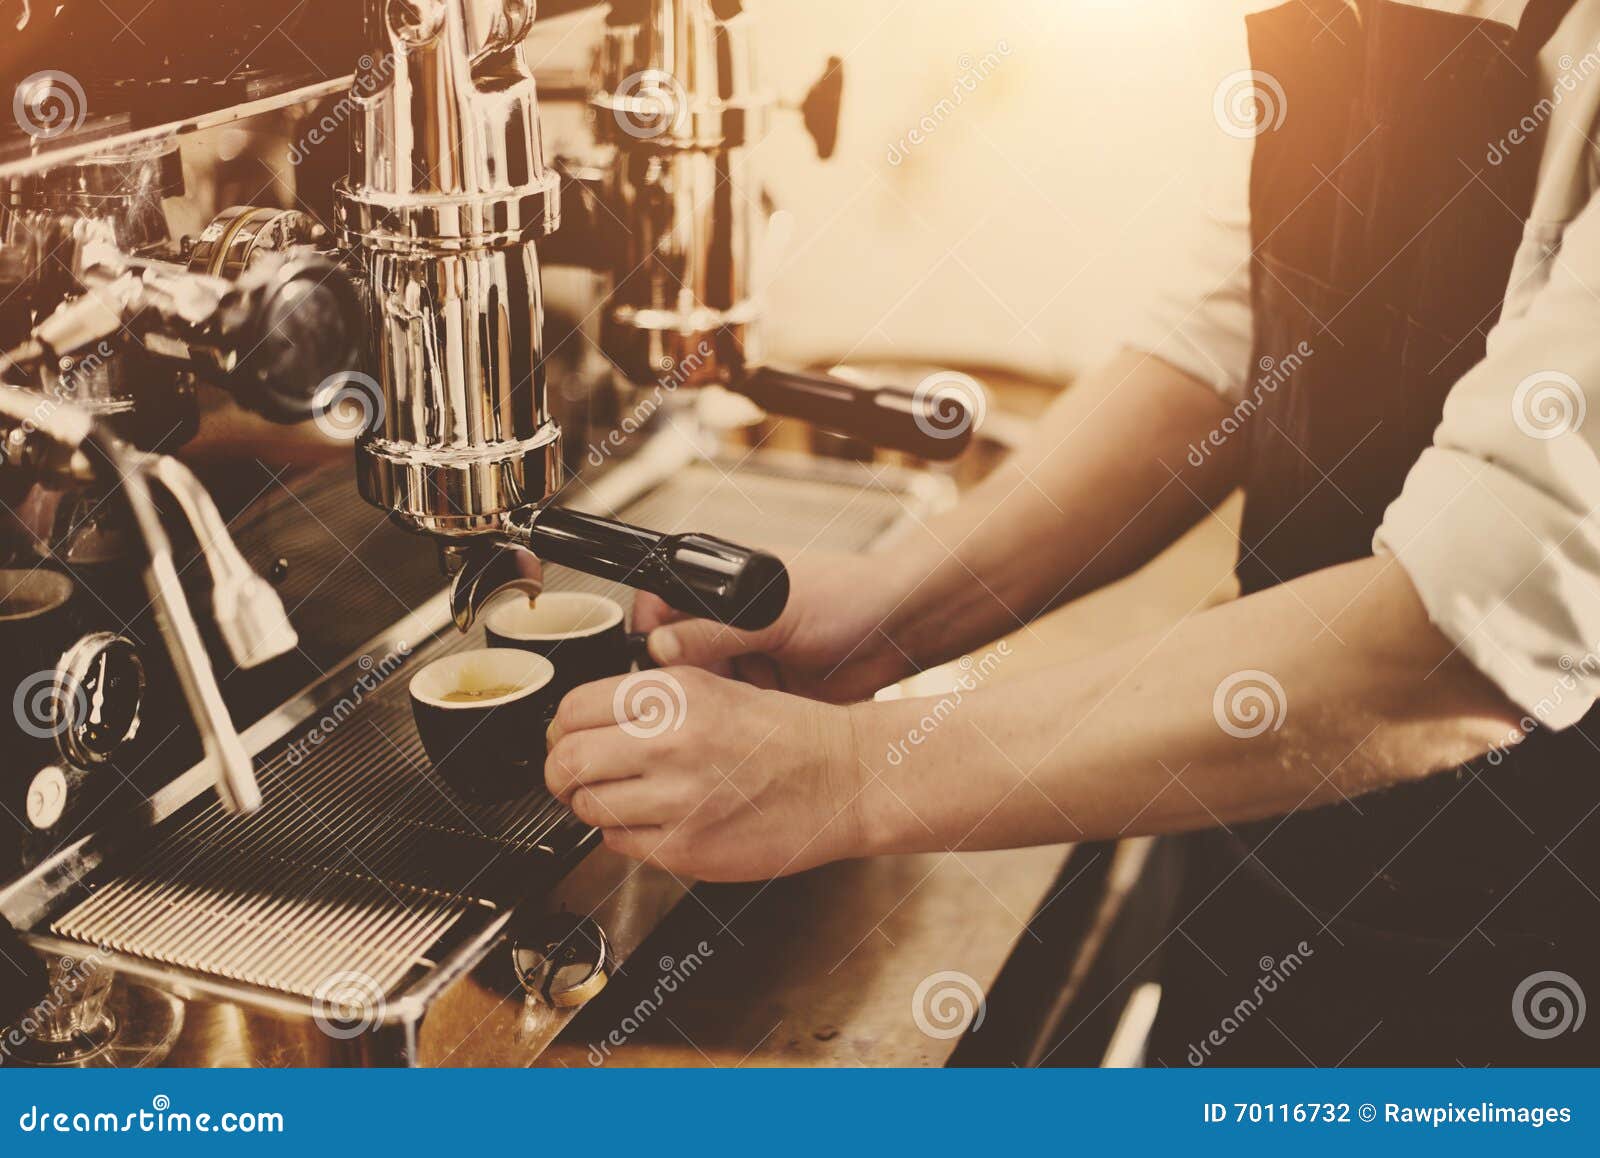 barista coffee maker machine grinder portafilter concept